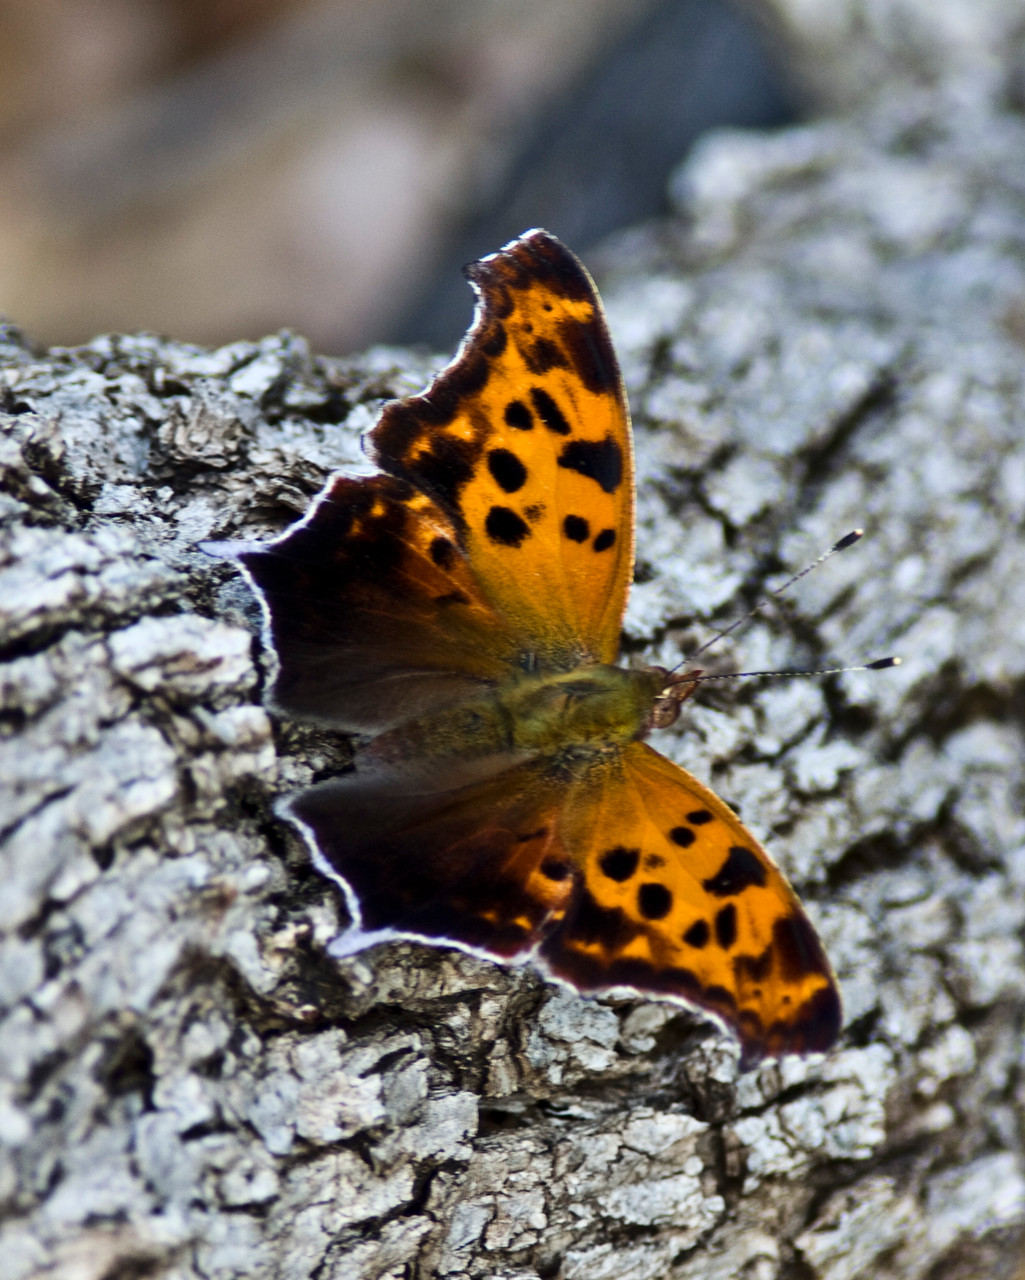 07_Schmetterling (butterfly) in Wichita Mountain in Oklahoma